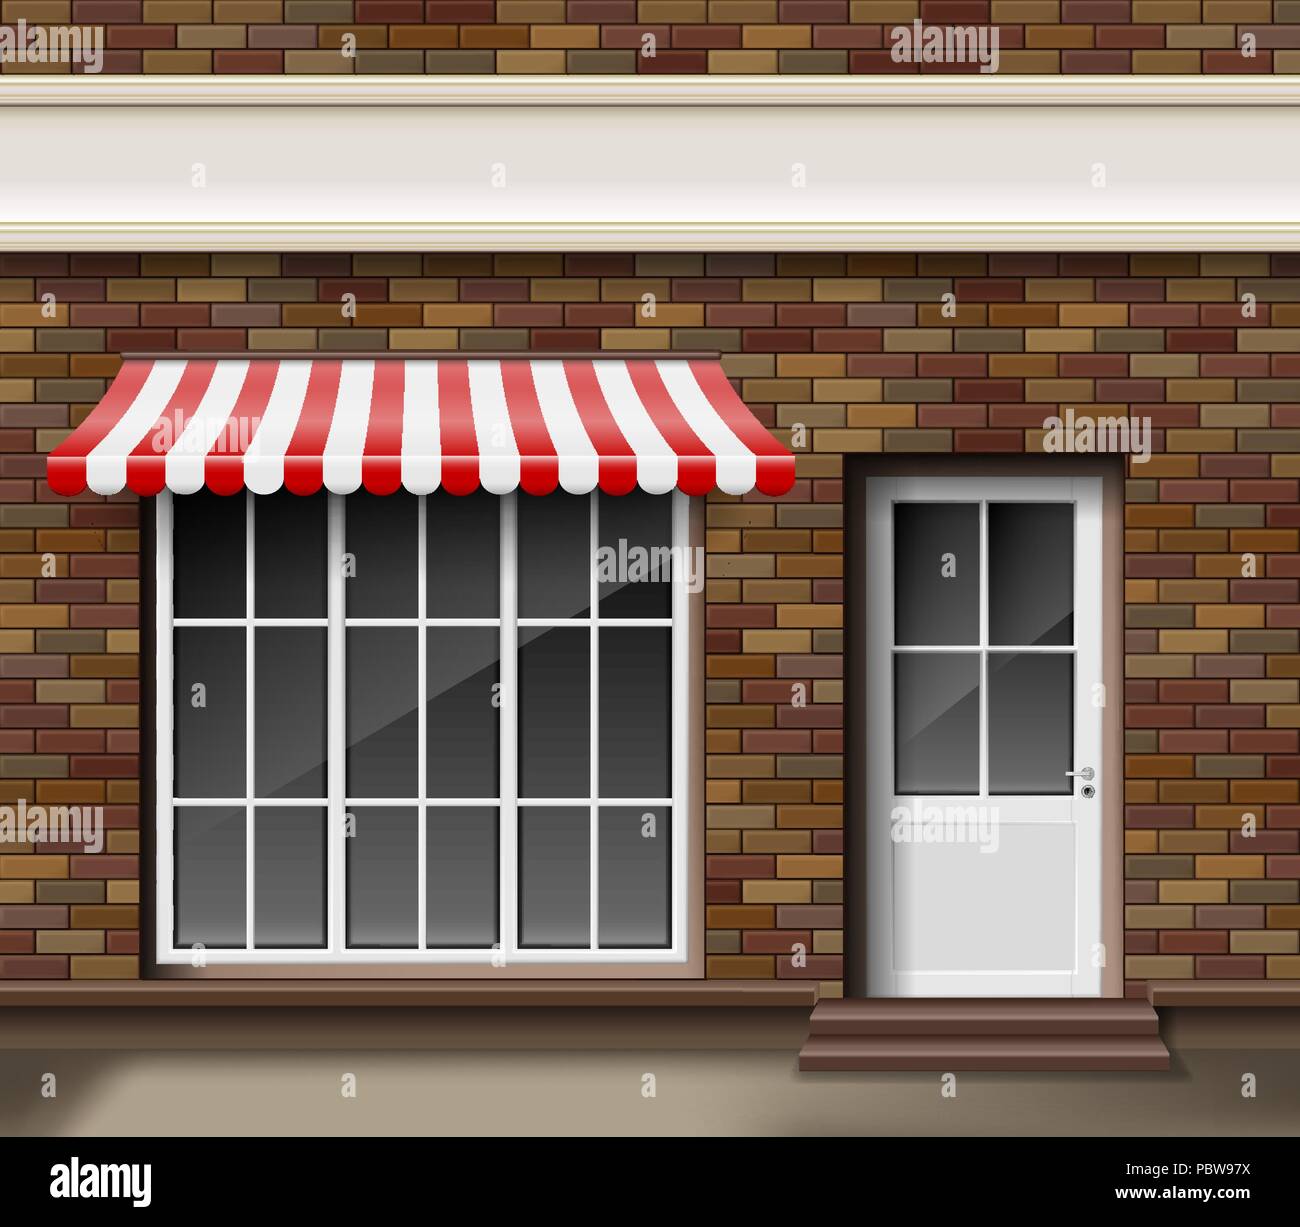 Brick kleine 3D-Store oder Boutique Fassade. Äußere Boutique Shop mit großen Fenster. Leere mockup von stilvollen realistische Straße Shop. Vector Illustration Stock Vektor